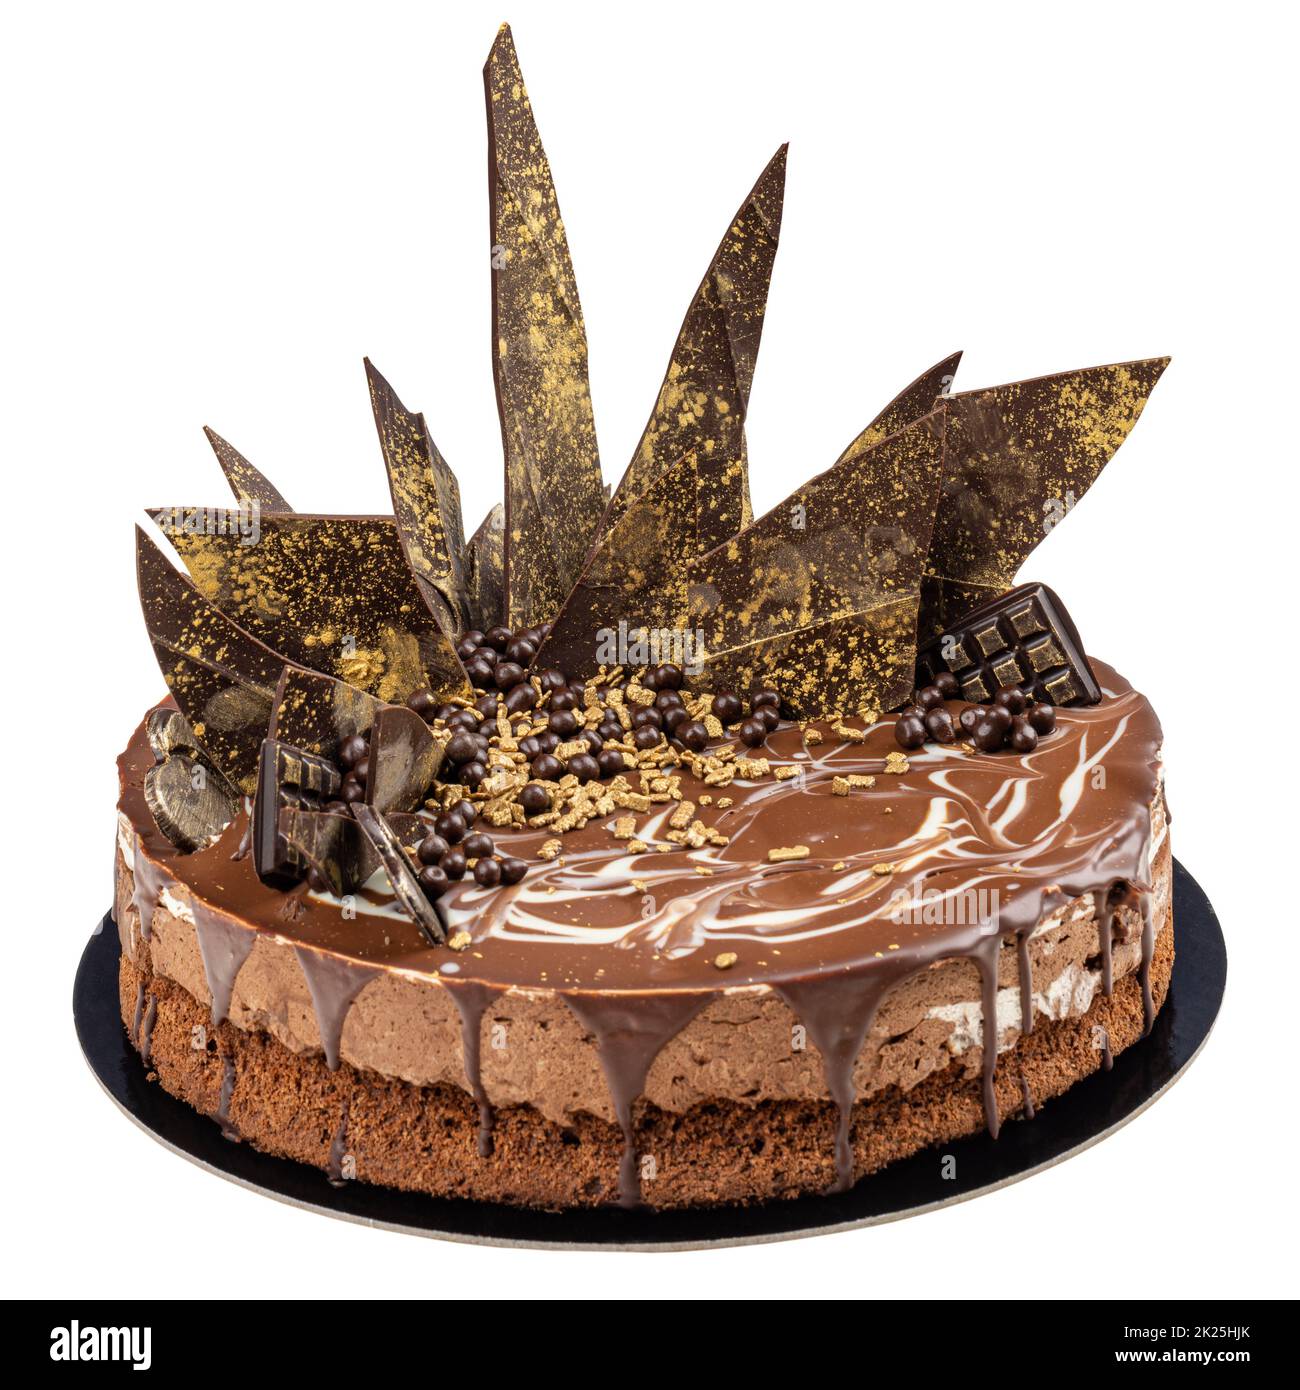 Gâteau au chocolat de fête Banque D'Images